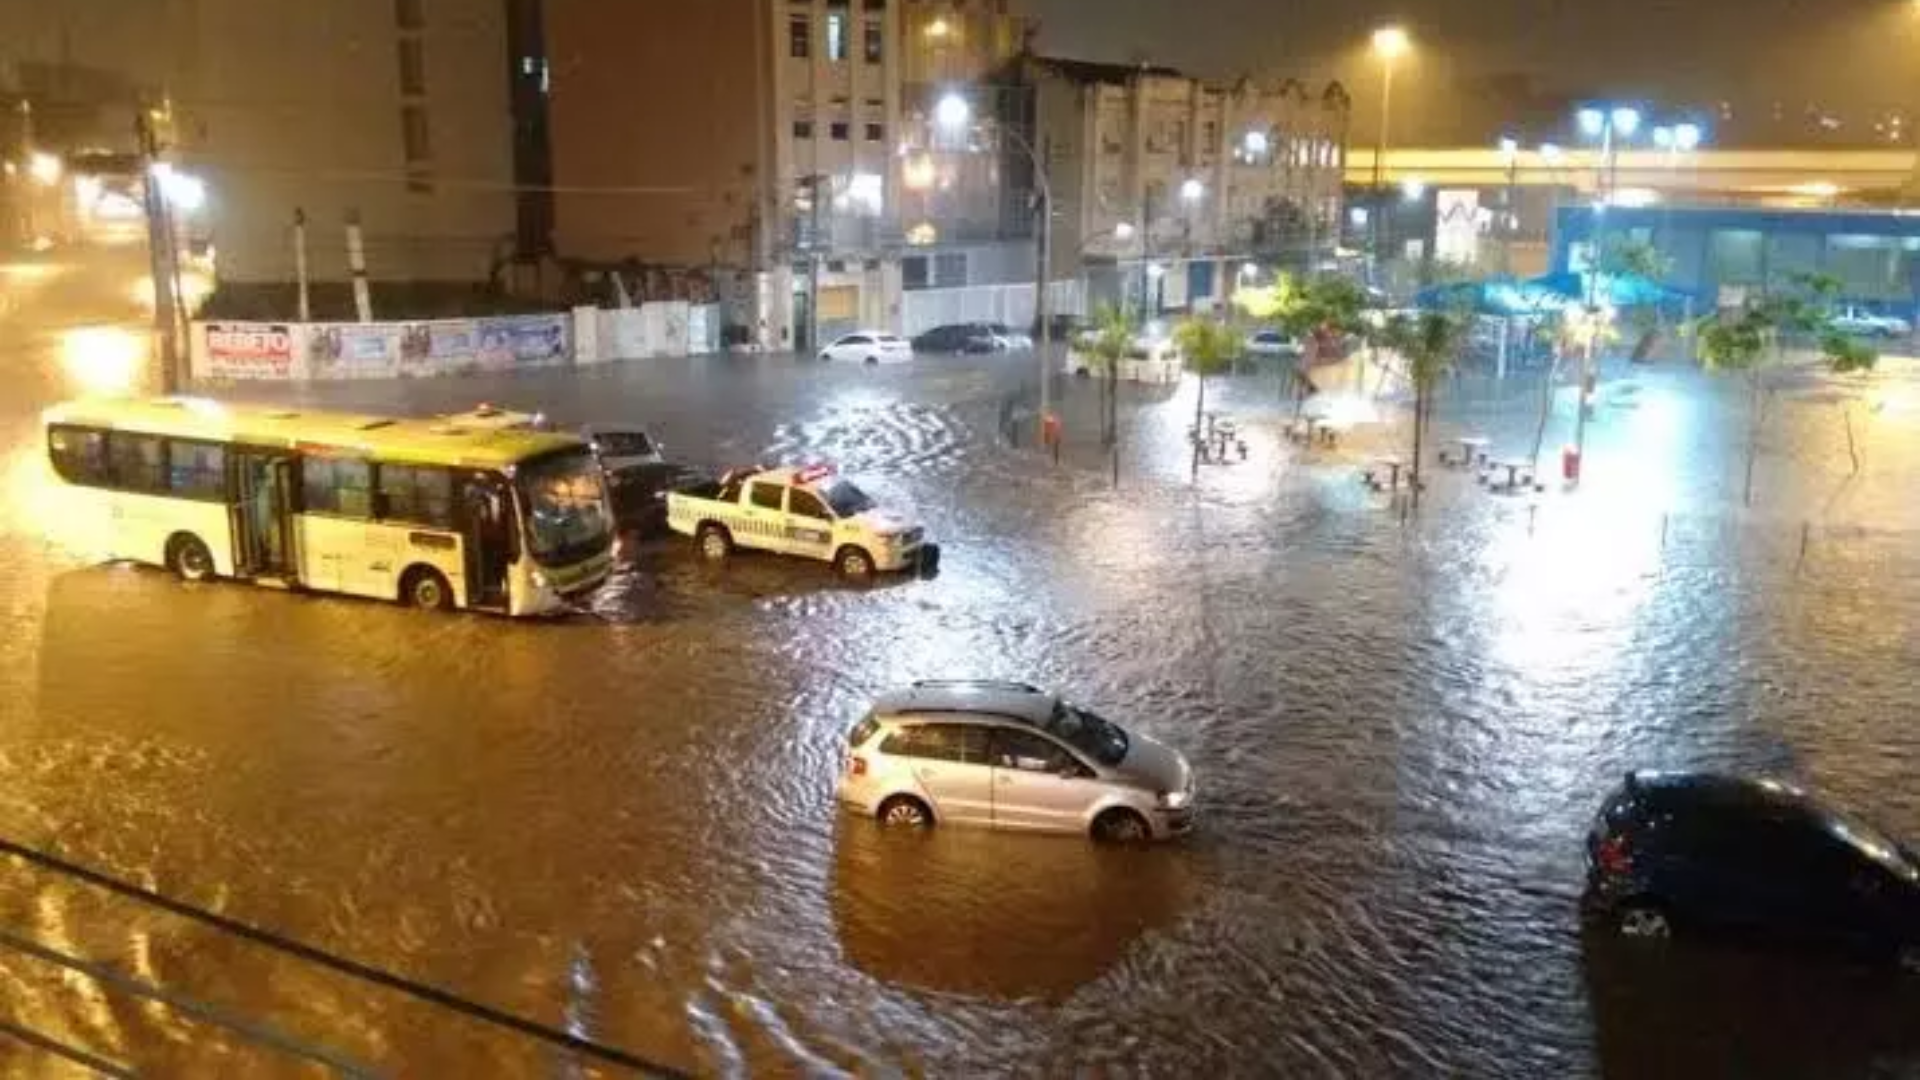 De Norte a Sul, bairros do Rio sofrem com as inundações em dias de chuva forte